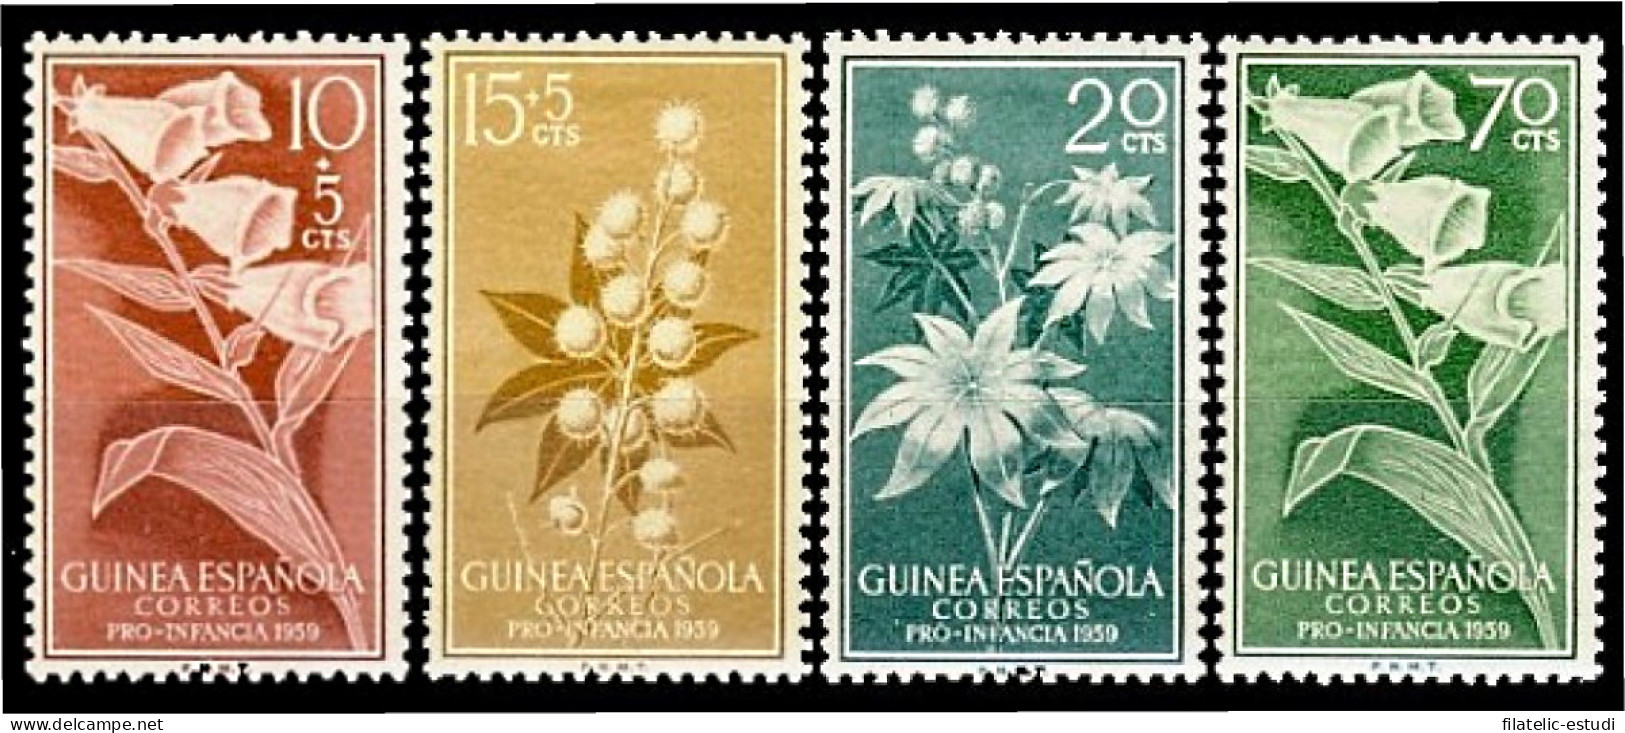 Guinea Española 391/94 1959 Pro Infancia Flora MNH - Guinée Espagnole